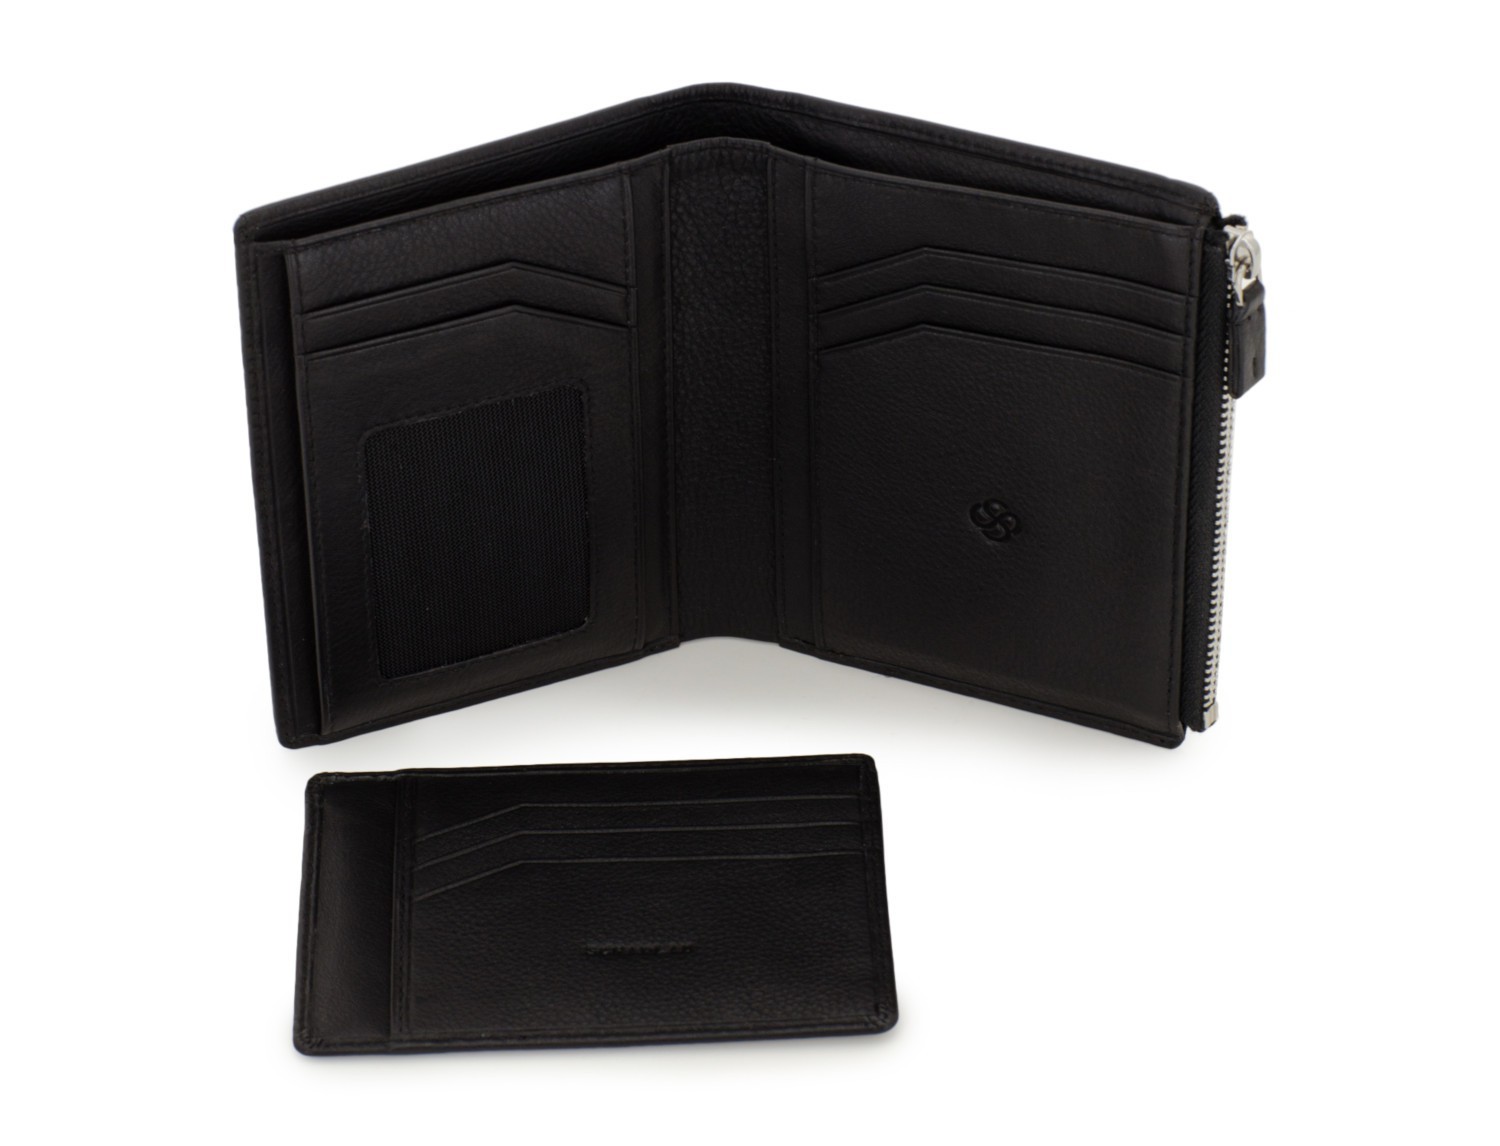 leather wallet in black open